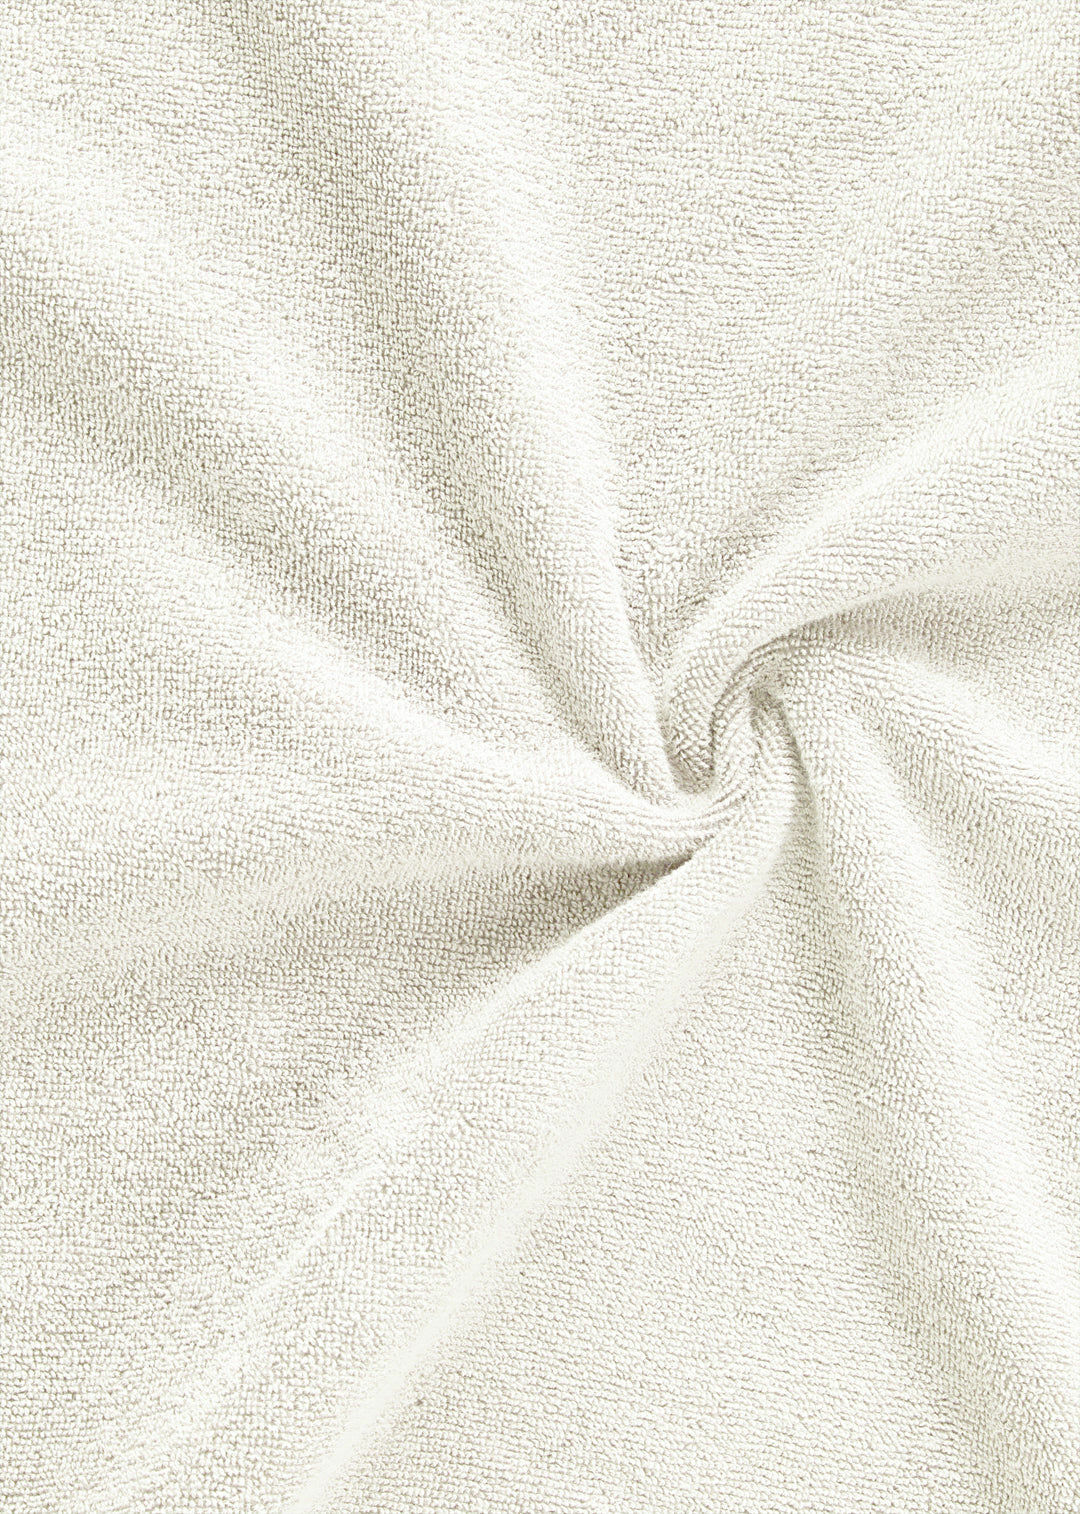 Handtuch Baumwolle Weiß 30 x 30 cm 1